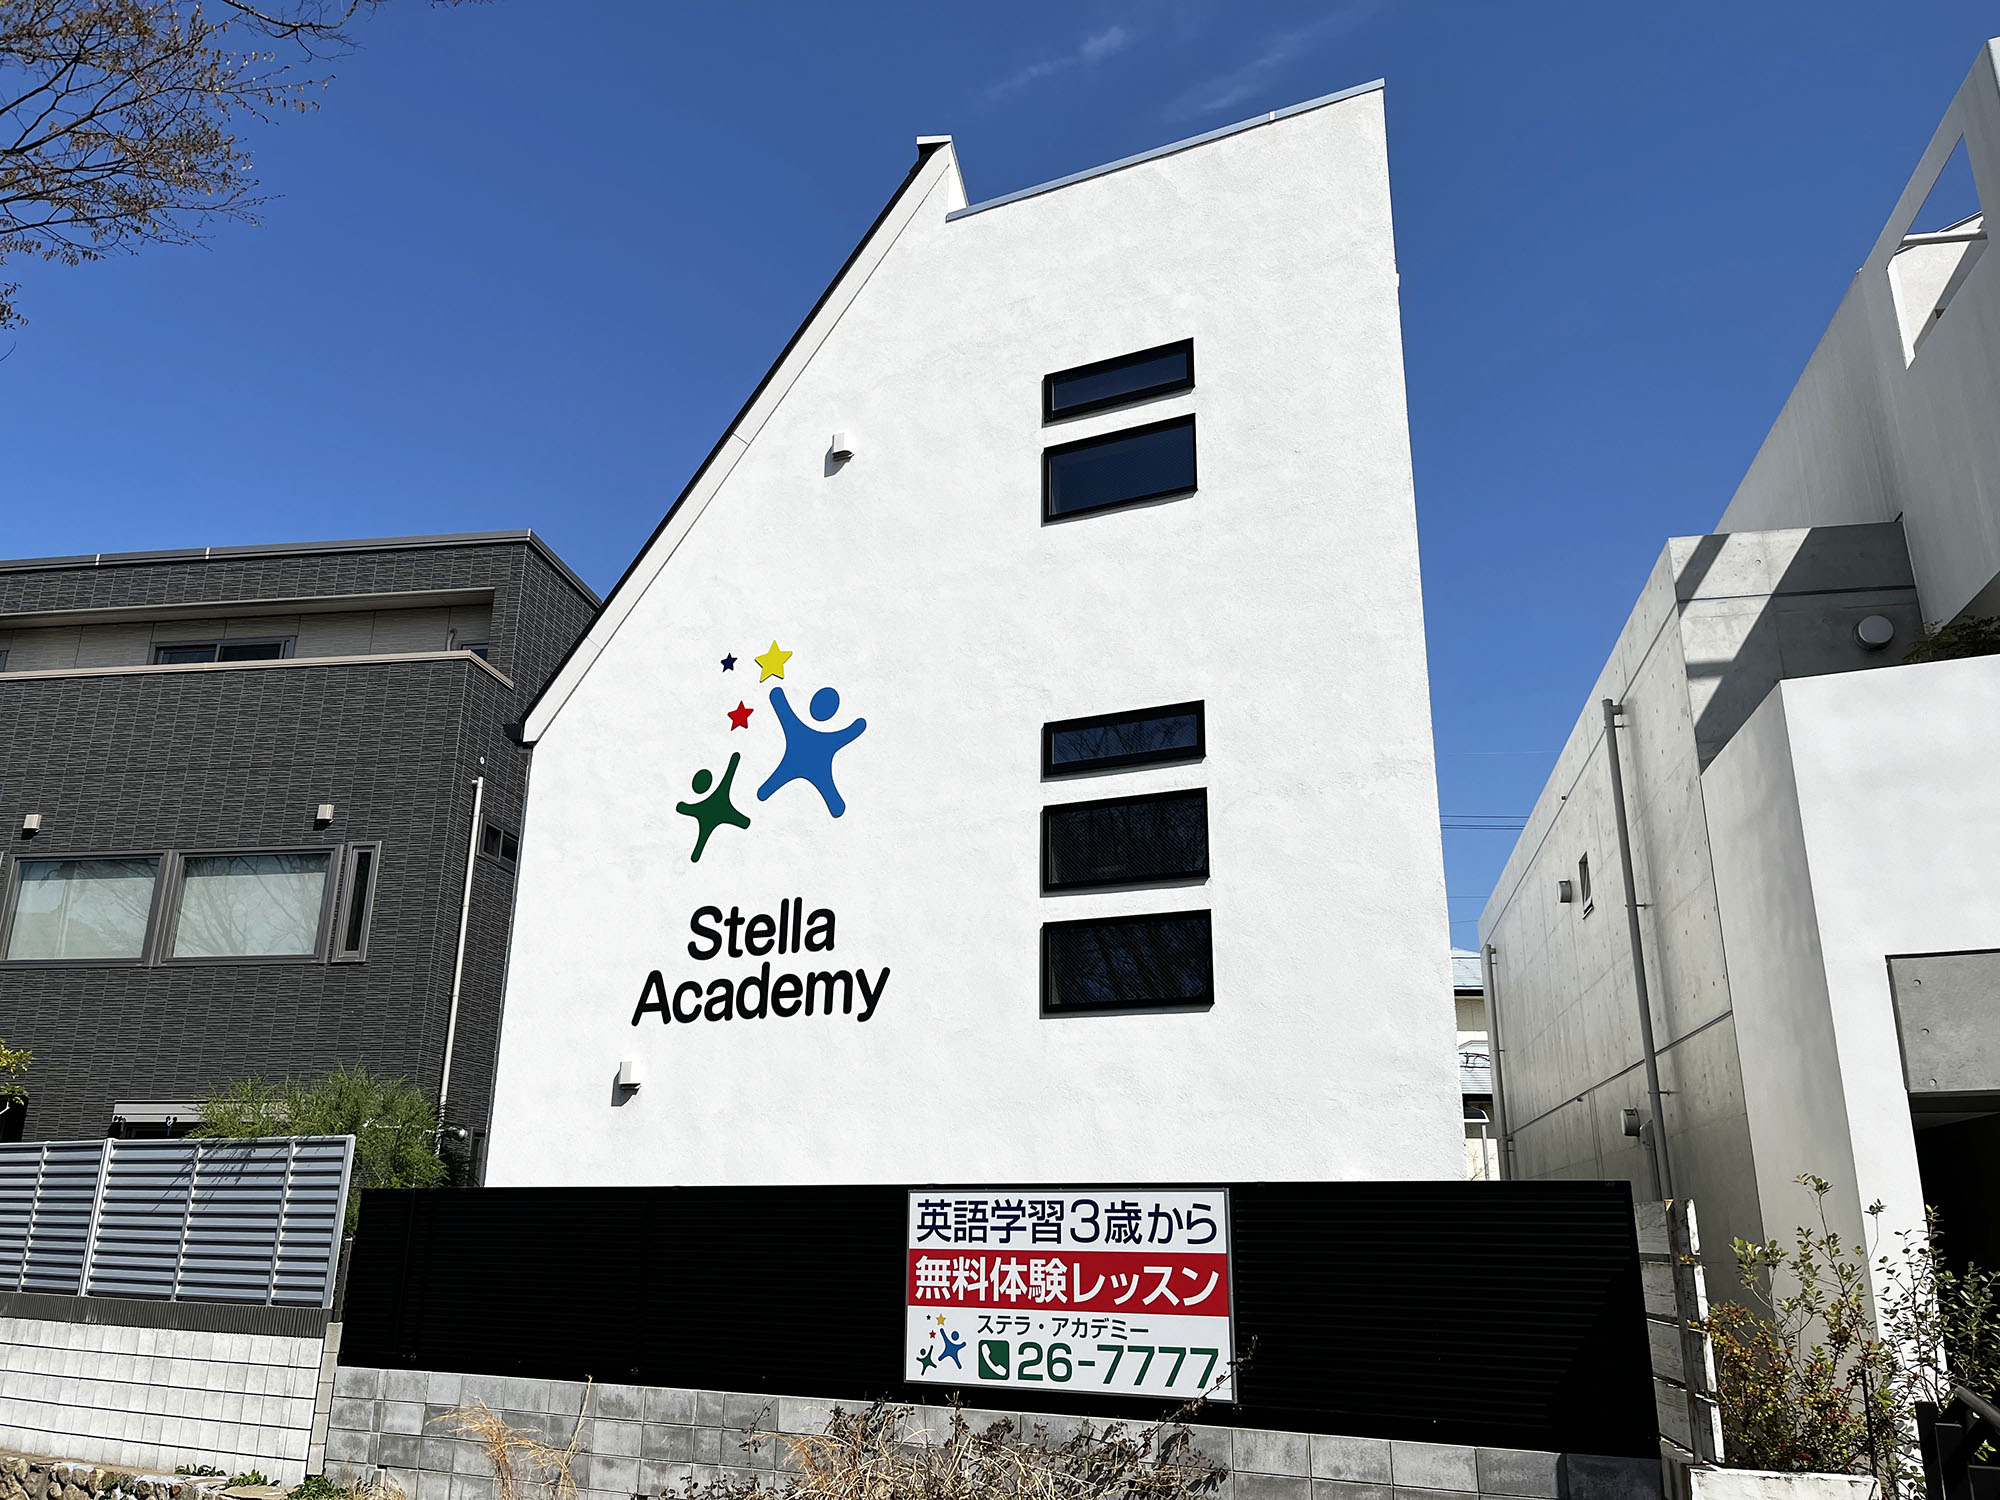 Stella Academy